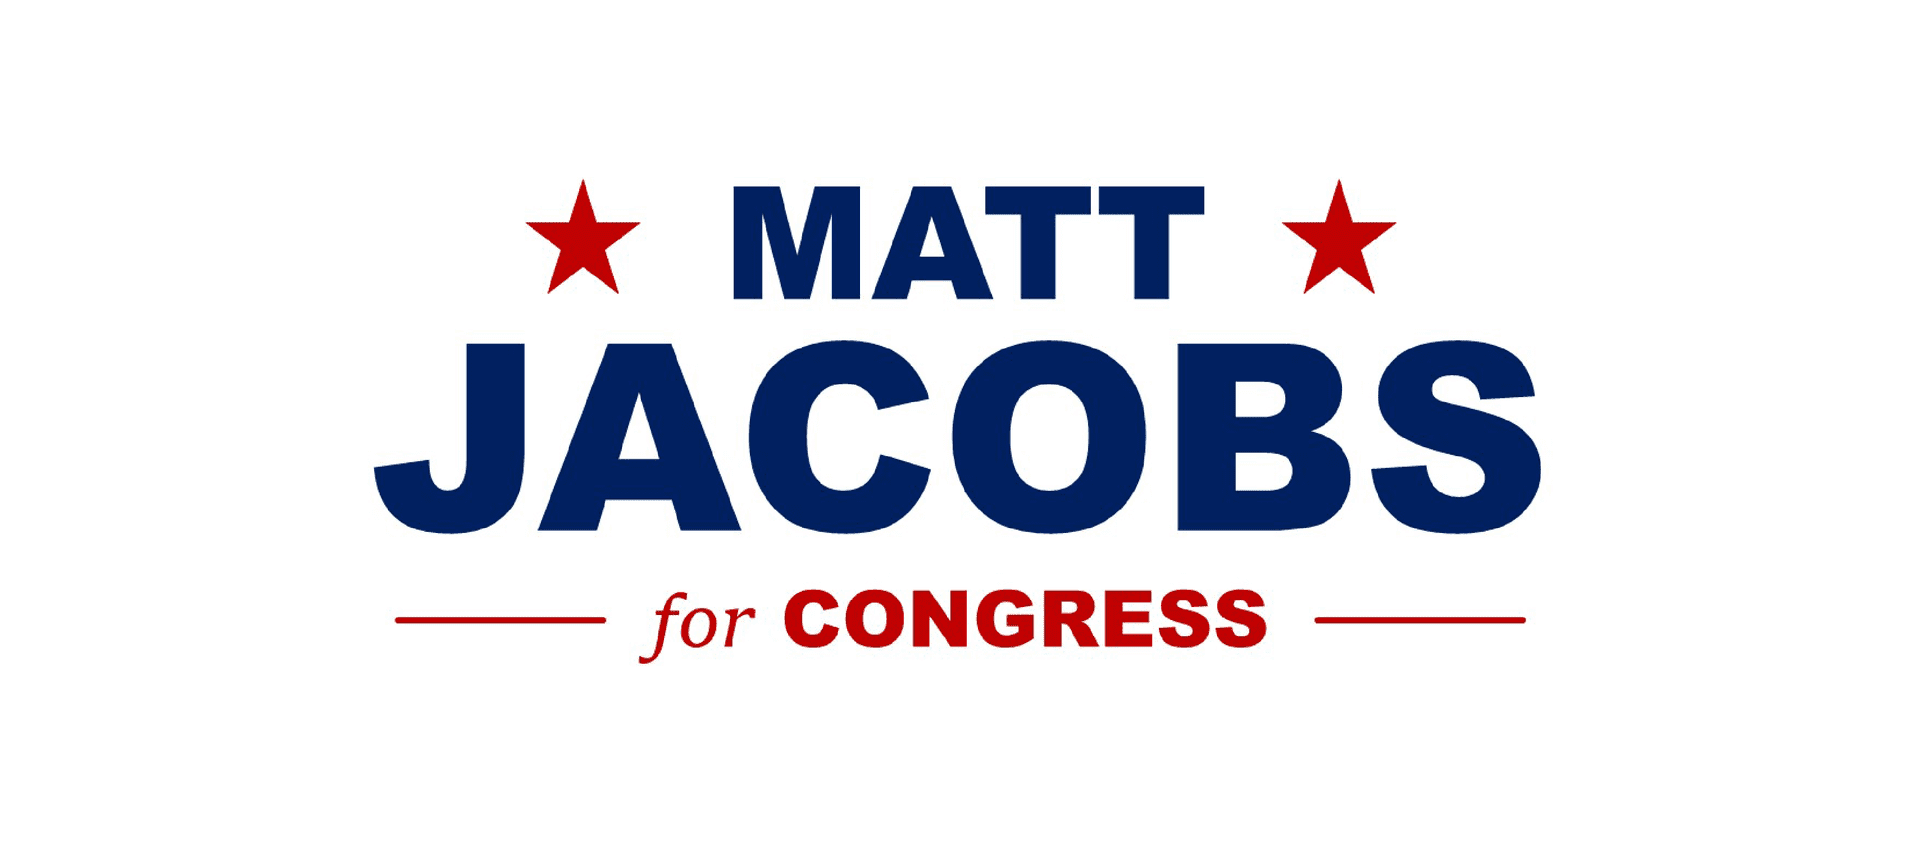 Support Matt Jacobs!